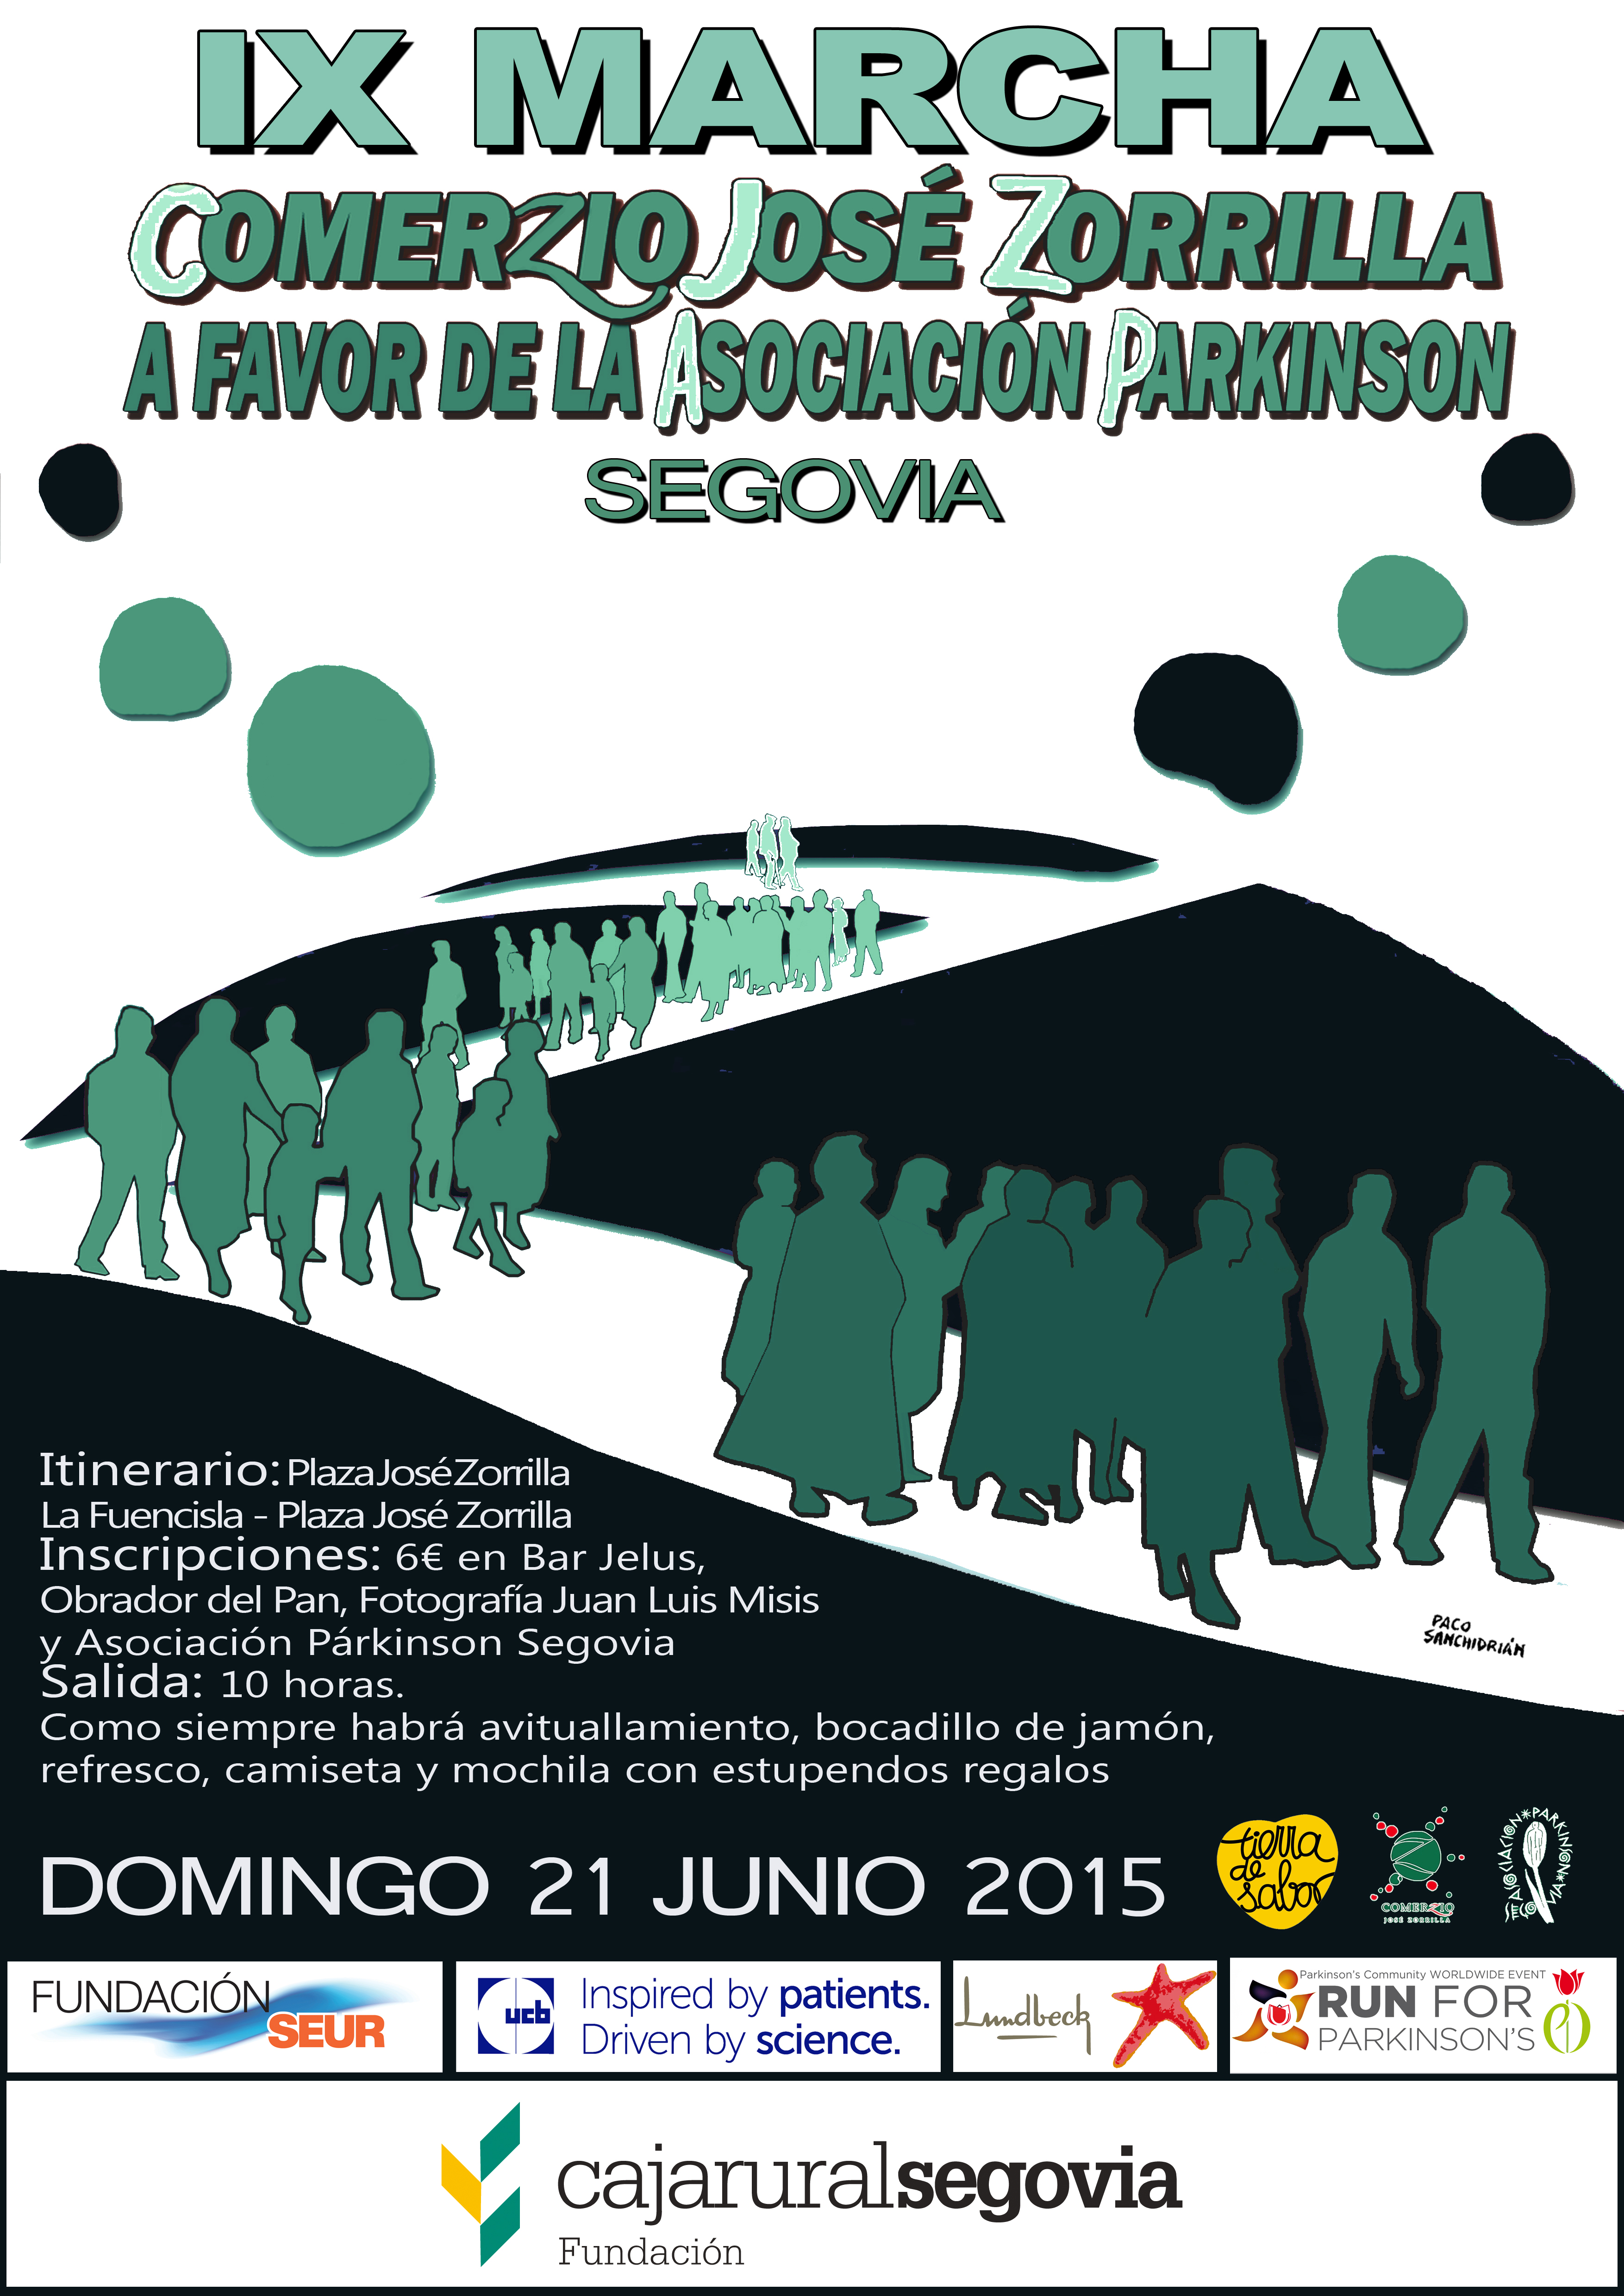 IX Marcha Comercio José Zorrilla a favor de la Asociación Parkinson Segovia